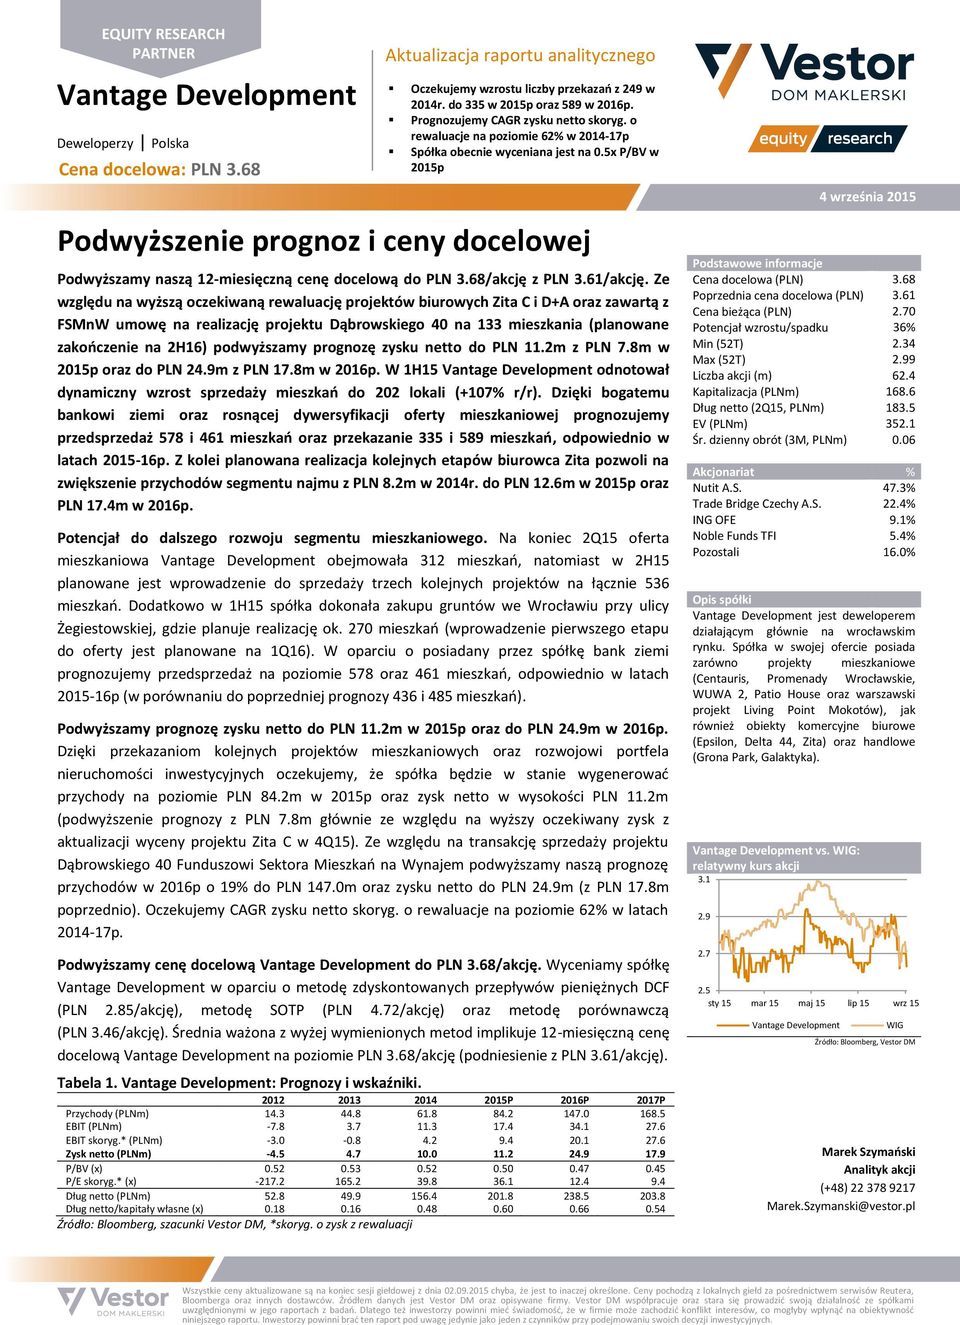 5x P/BV w 2015p Podwyższenie prognoz i ceny docelowej Podwyższamy naszą 12-miesięczną cenę docelową do PLN 3.68/akcję z PLN 3.61/akcję.